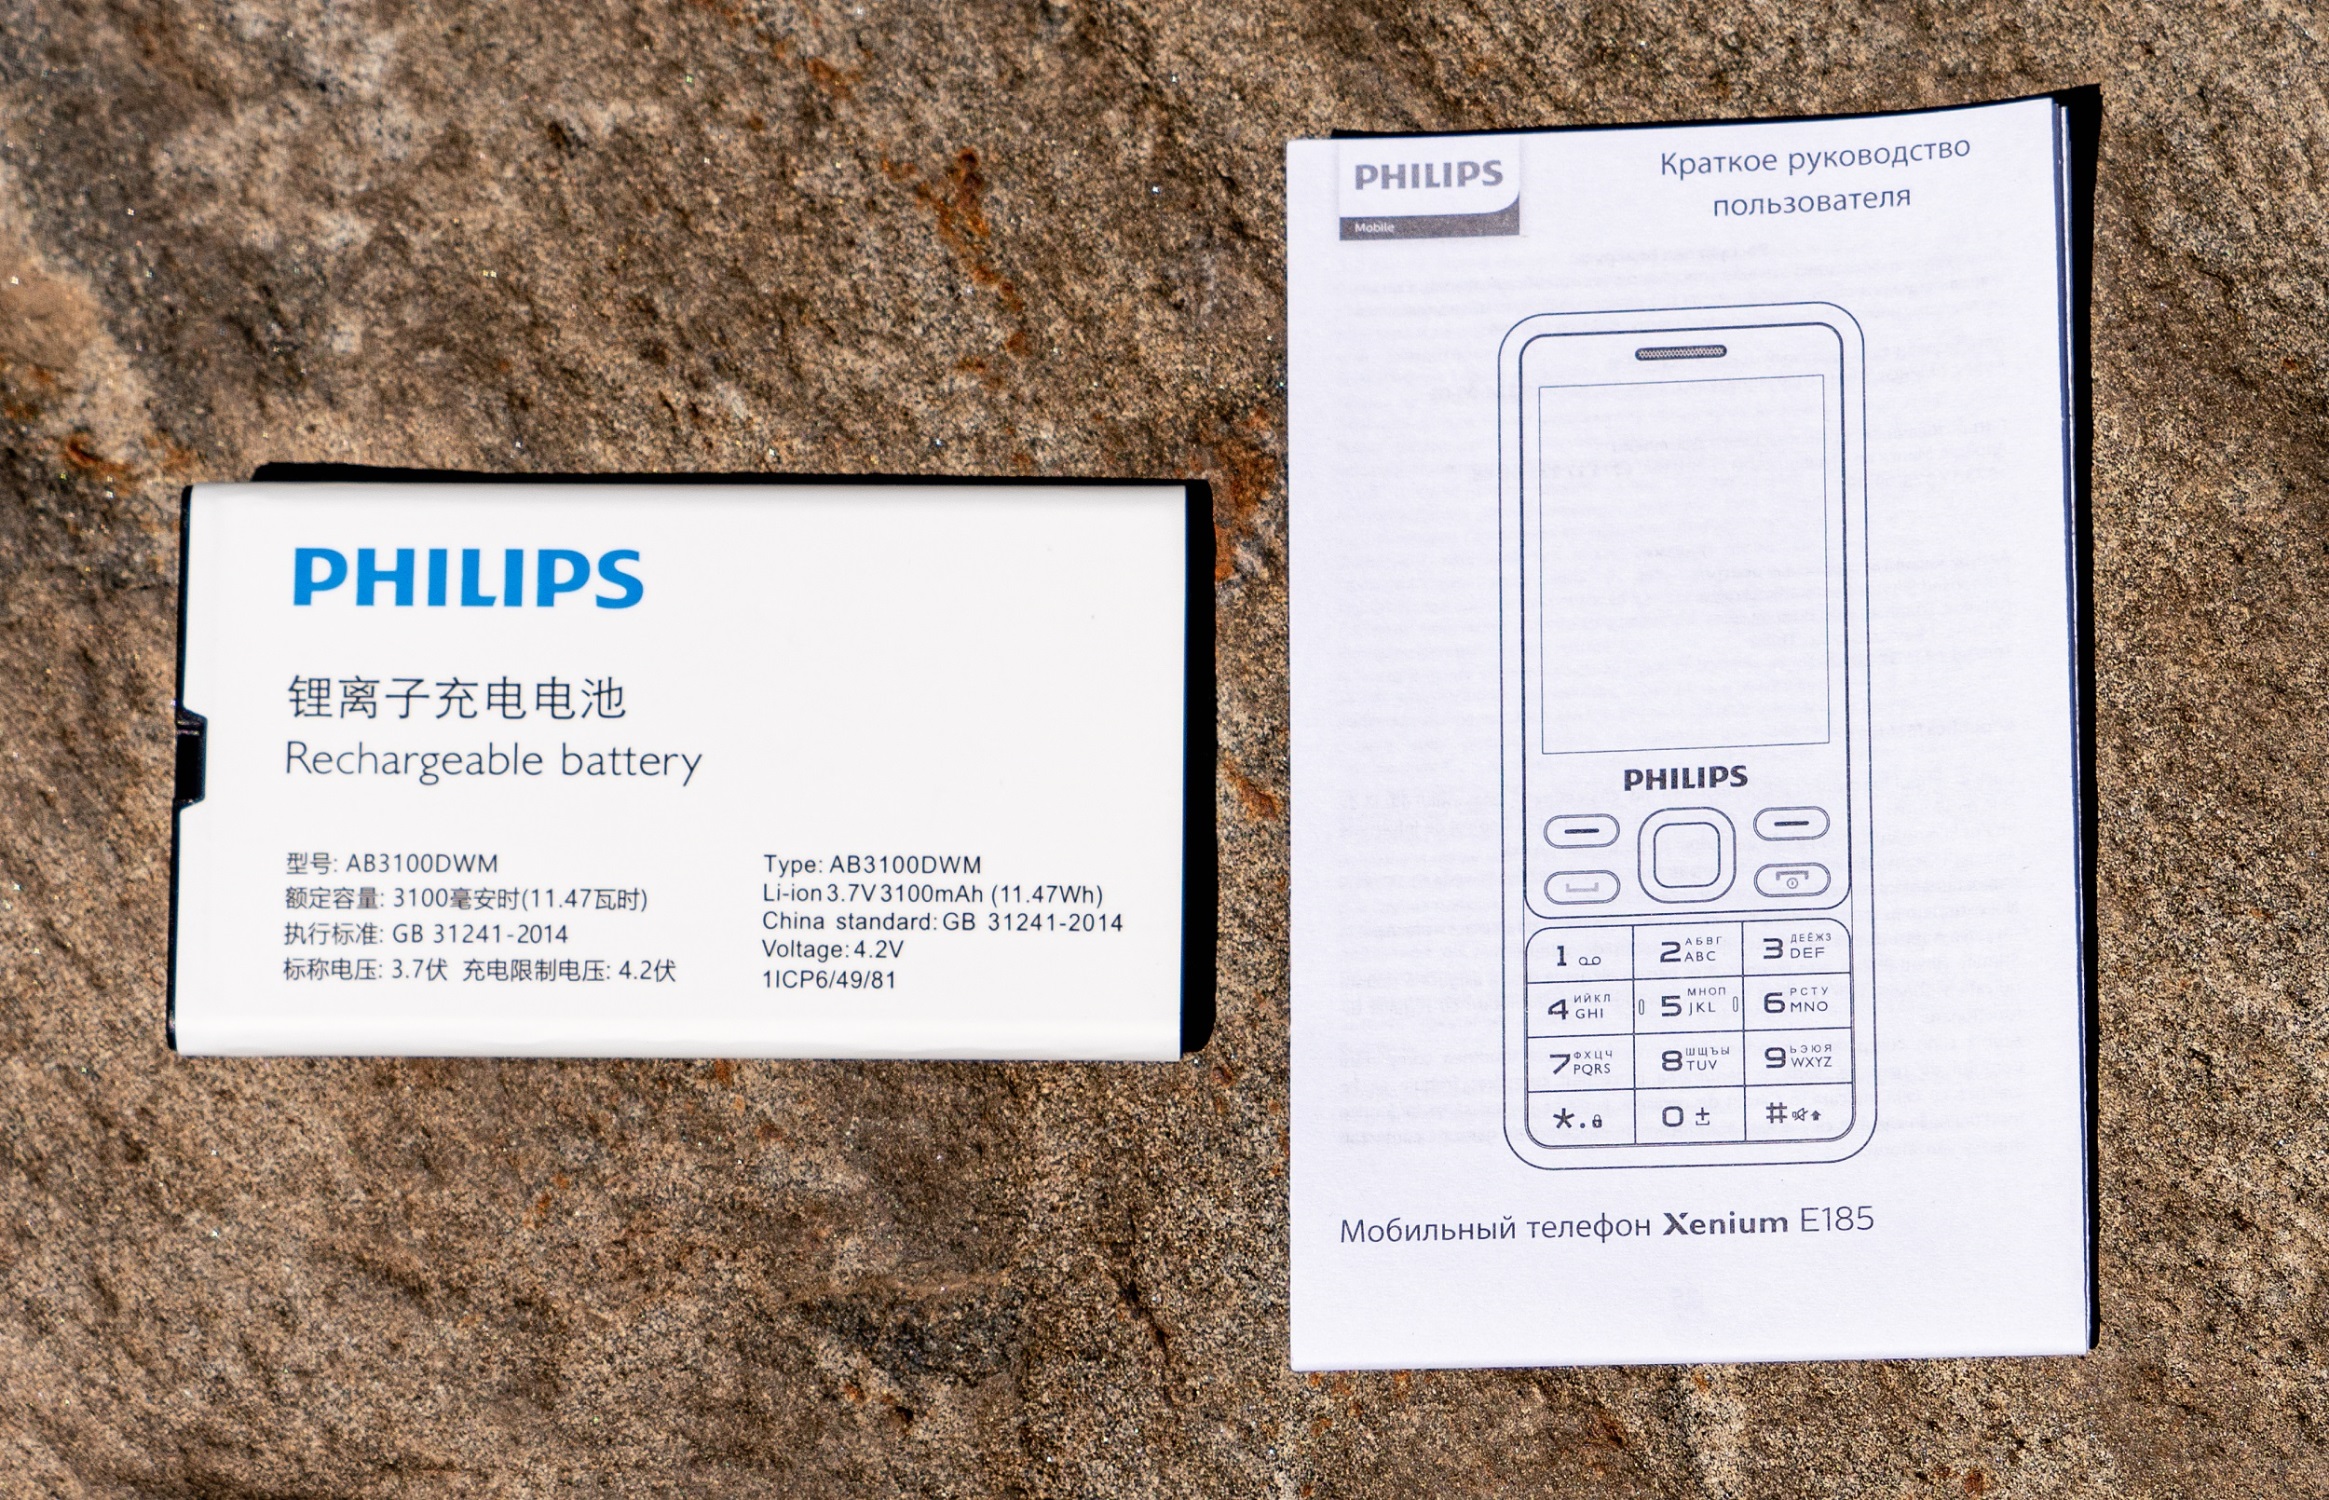 Телефон xenium e185. Philips Xenium e185. Телефон Philips Xenium e185. Телефон Philips Xenium e185 меню. Xenium инструкция.